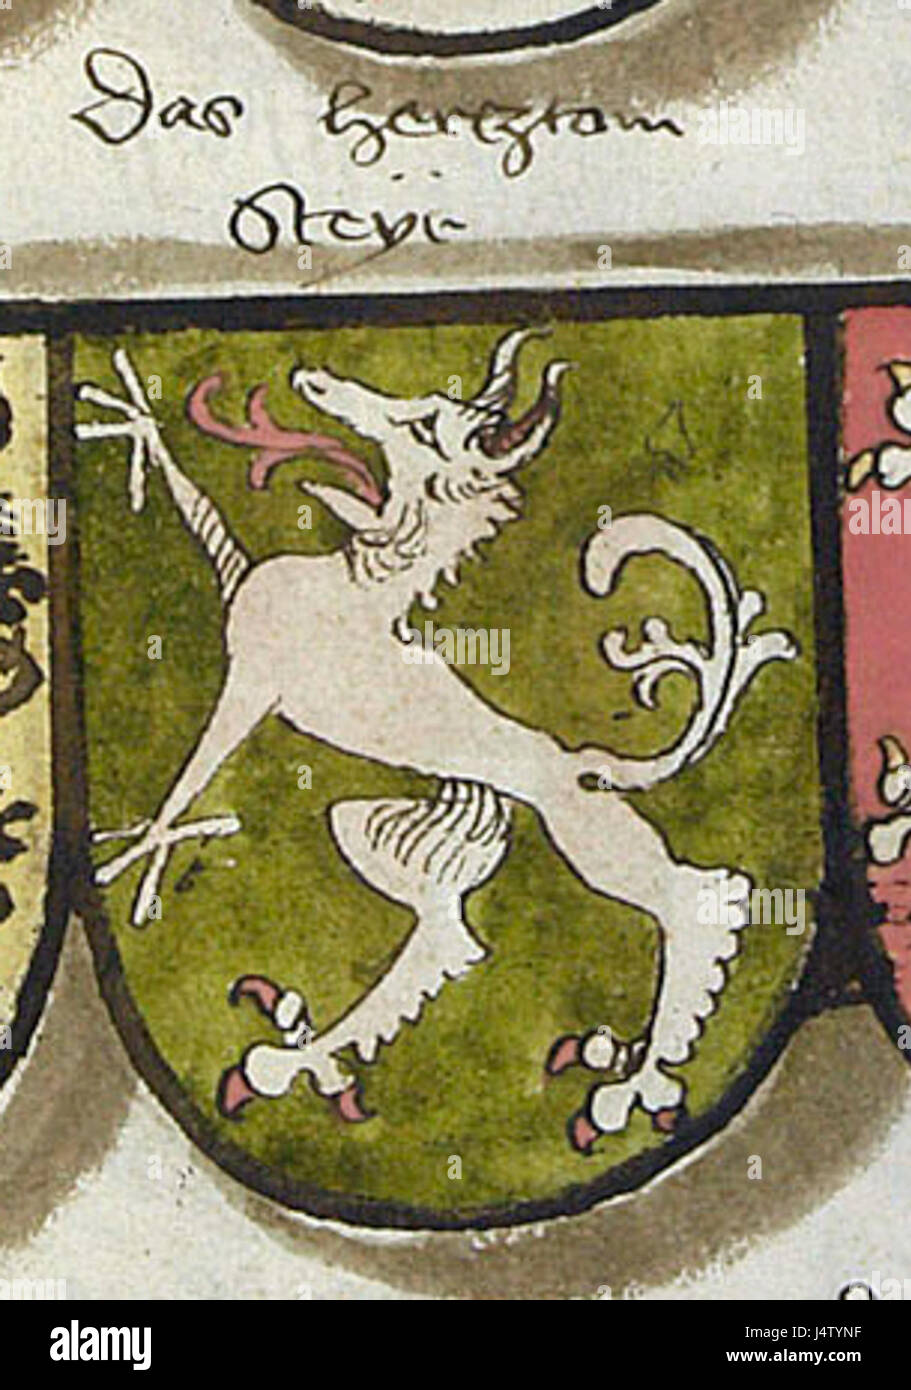 Wappen Herzogtum Steyr c1495 Stock Photo